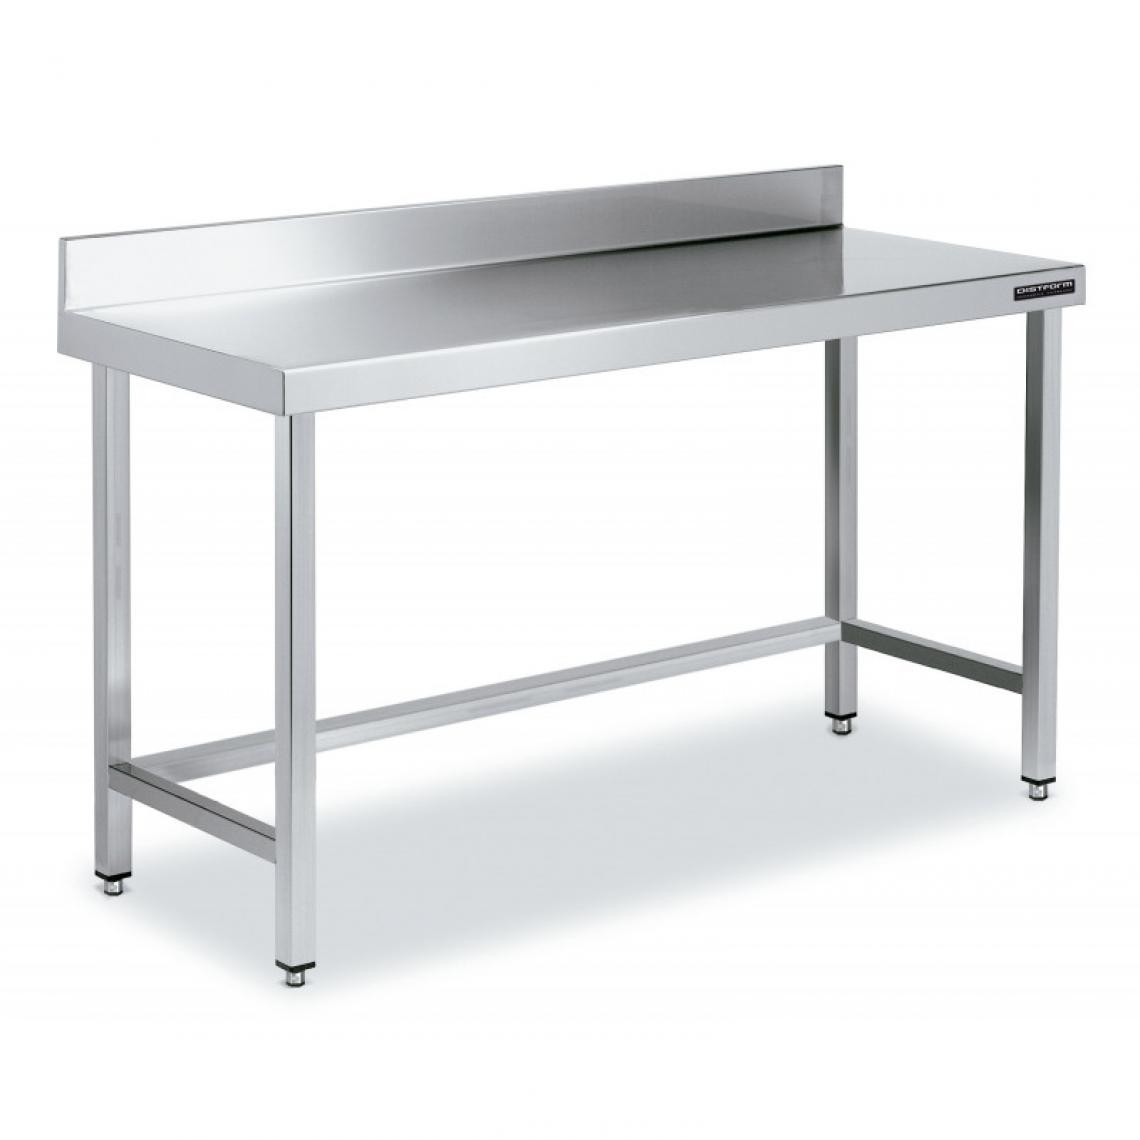 DISTFORM - Table de Travail Adossée Inox avec Renforts - Gamme 600 - Hauteur 600 - Distform - Acier inoxydable1700x600 - Tables à manger